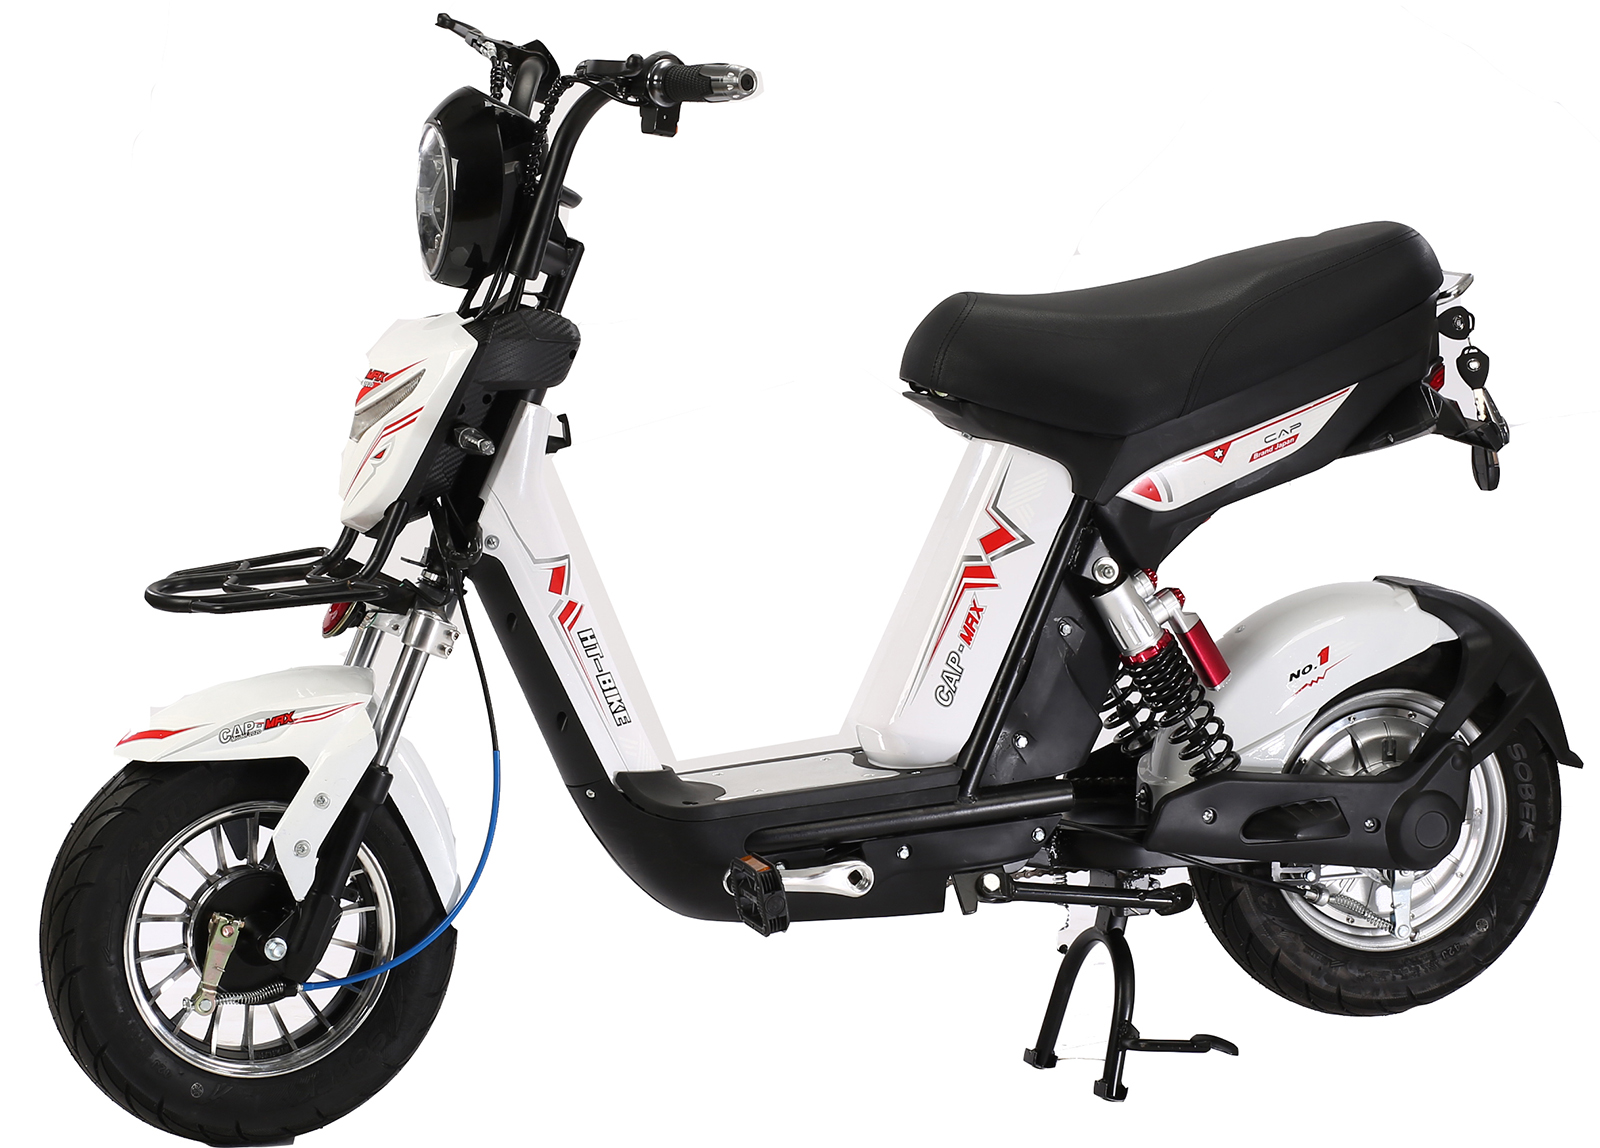 CEO HayBike  hãng sản xuất xe đạp điện với trợ lực năng lượng điện made in Vietnam Với startup  Shop chúng tôi tìm hiểu chi phí ko nên mục tiêu sau cùng bại liệt đơn thuần khí cụ và  thước